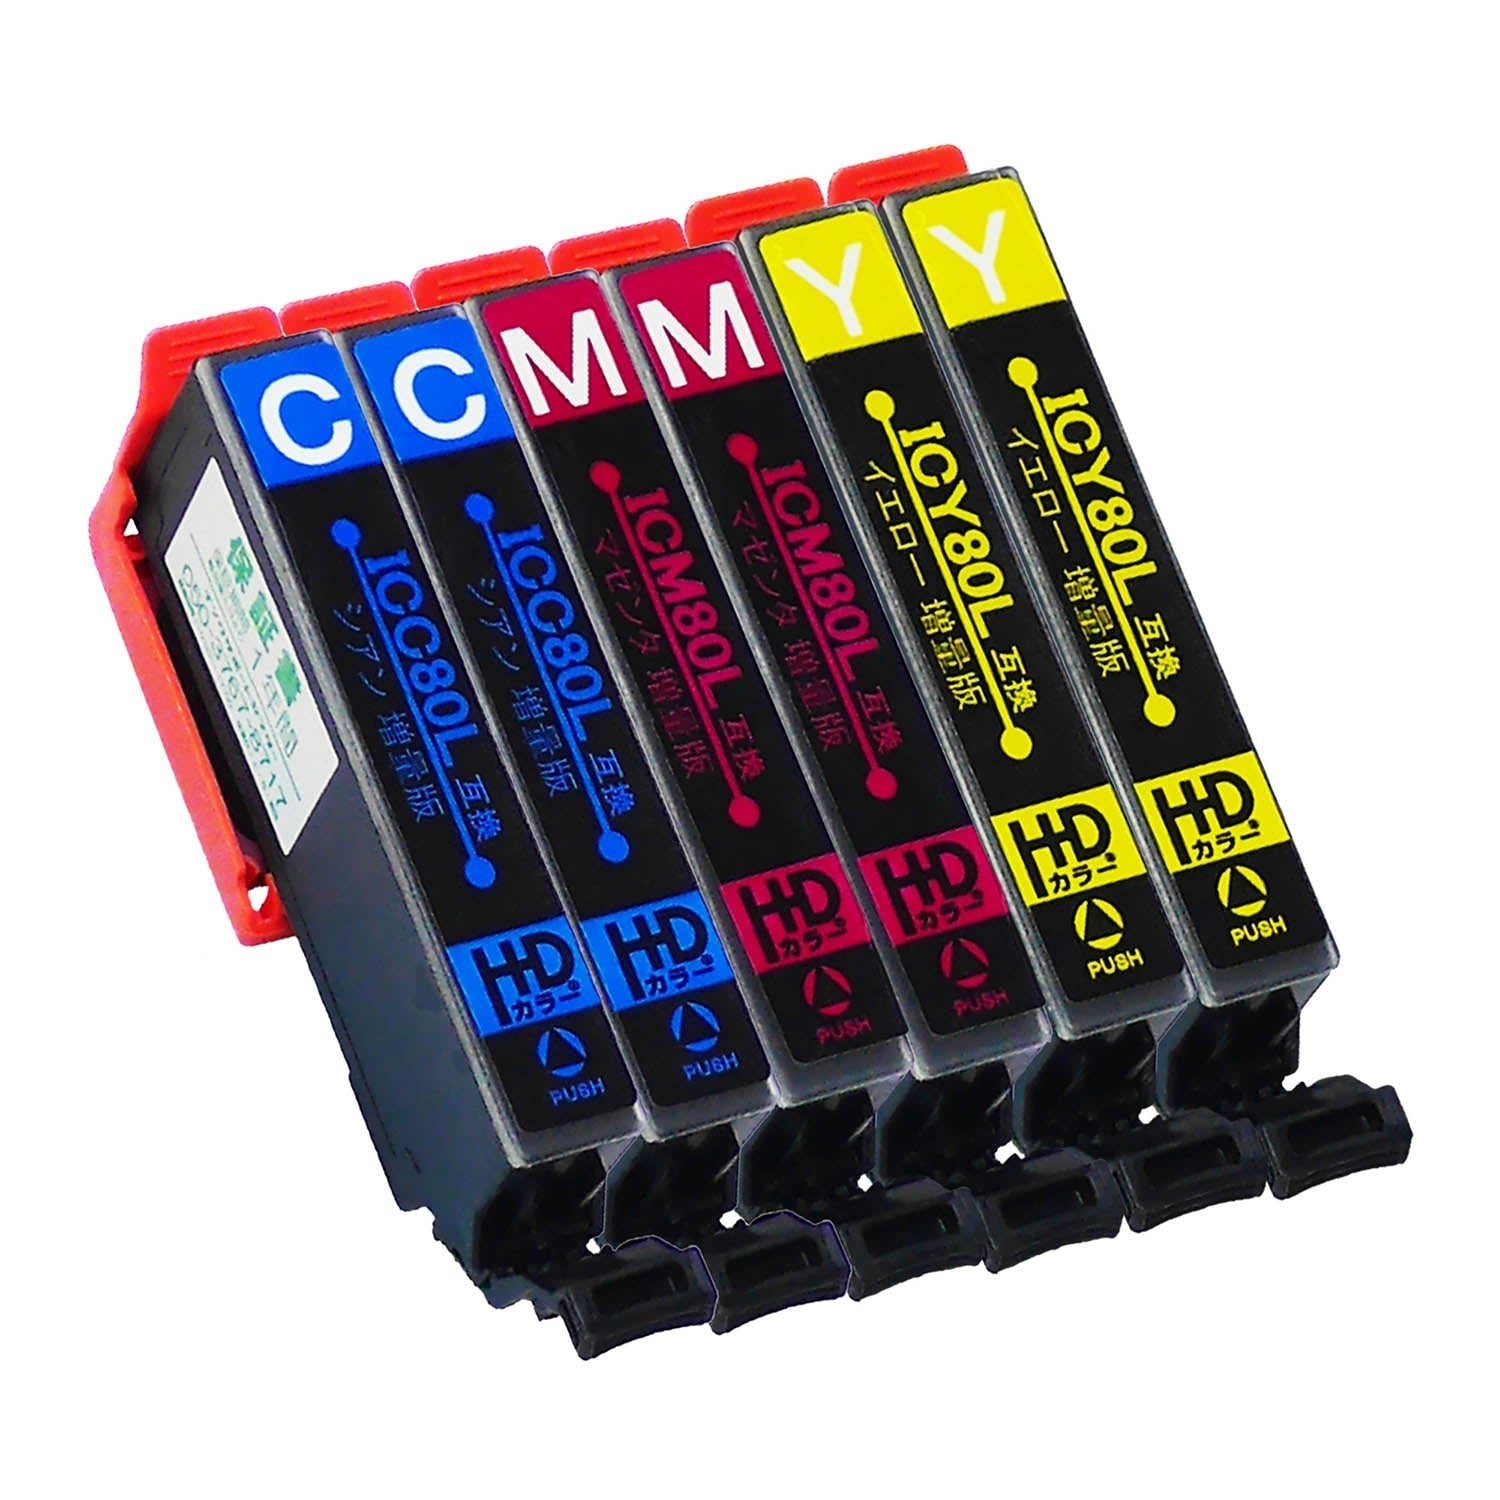 エプソン用 IC80 (とうもろこし) 互換インク カラー3色 増量版